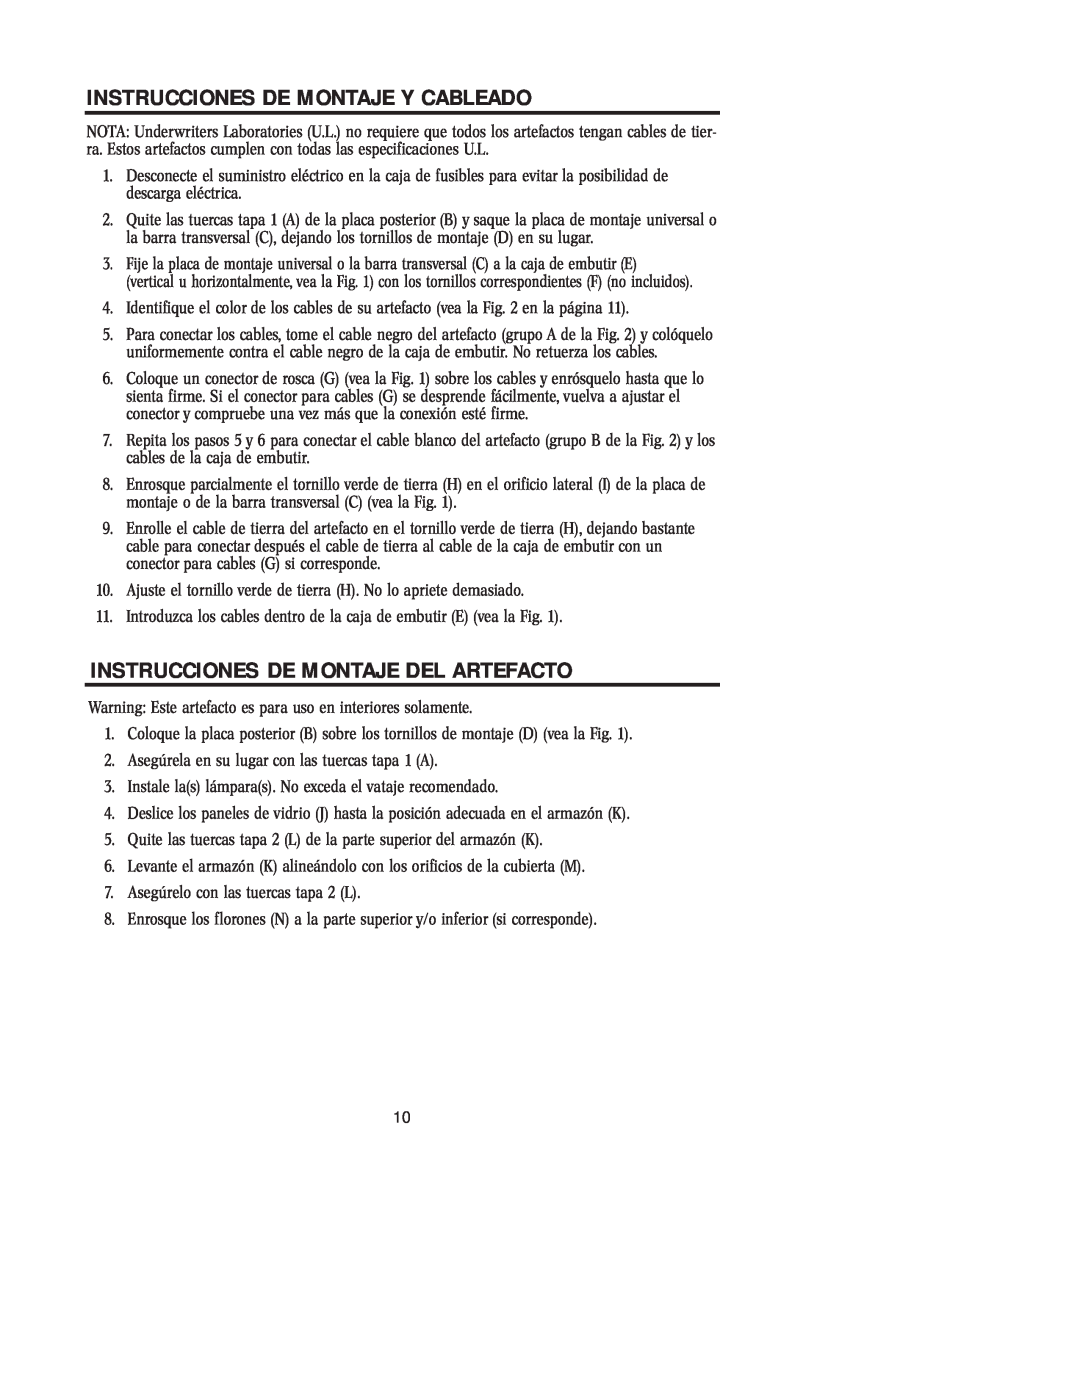 Westinghouse w-038 owner manual Instrucciones De Montaje Y Cableado, Instrucciones De Montaje Del Artefacto 